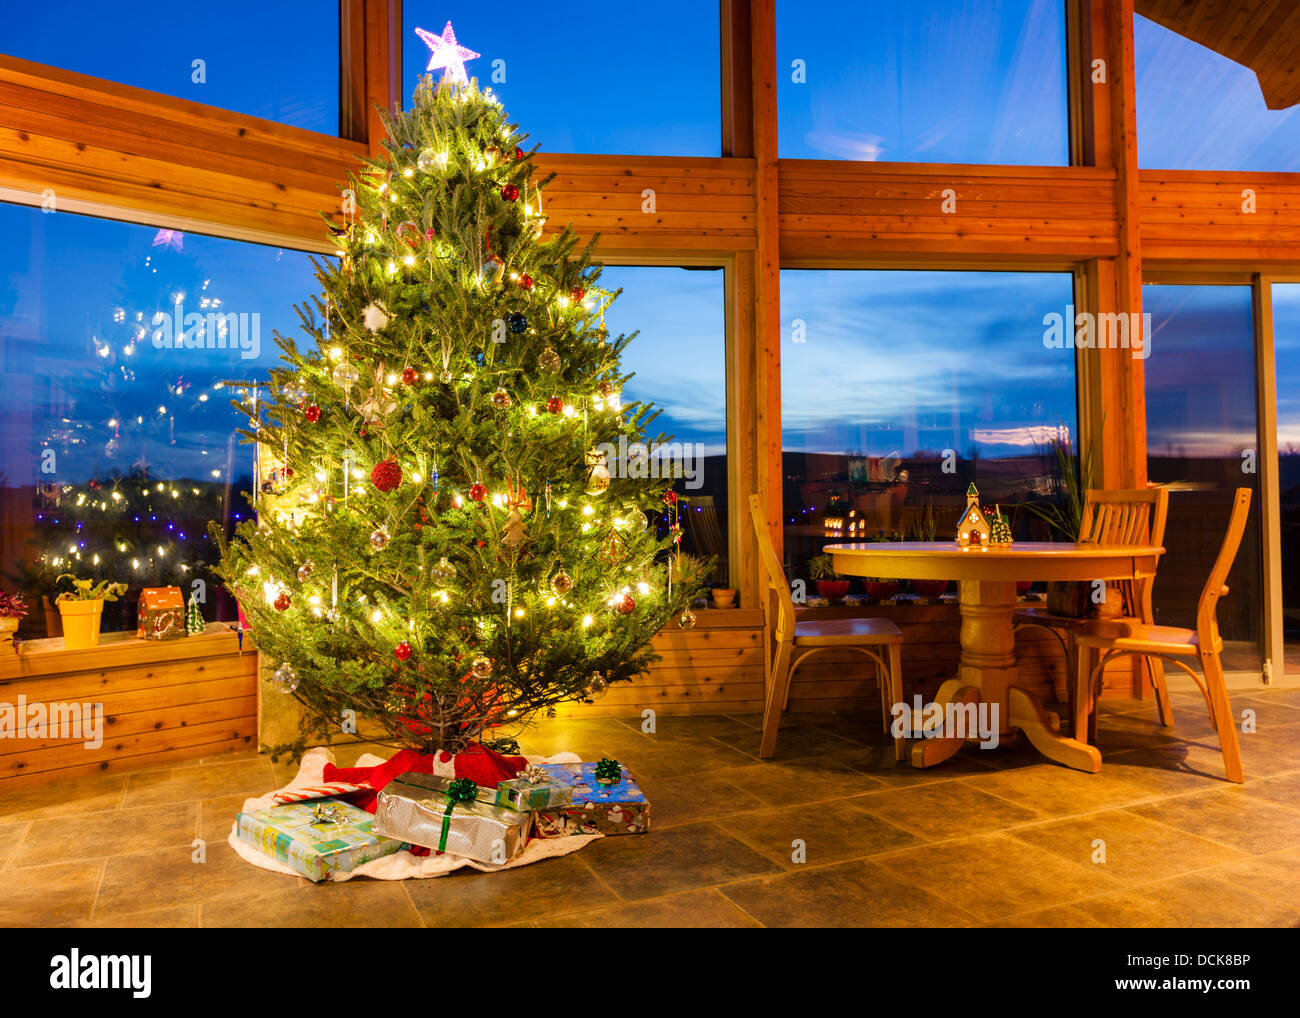 Arbre de Noël dans une maison moderne avec de grandes fenêtres Banque D'Images